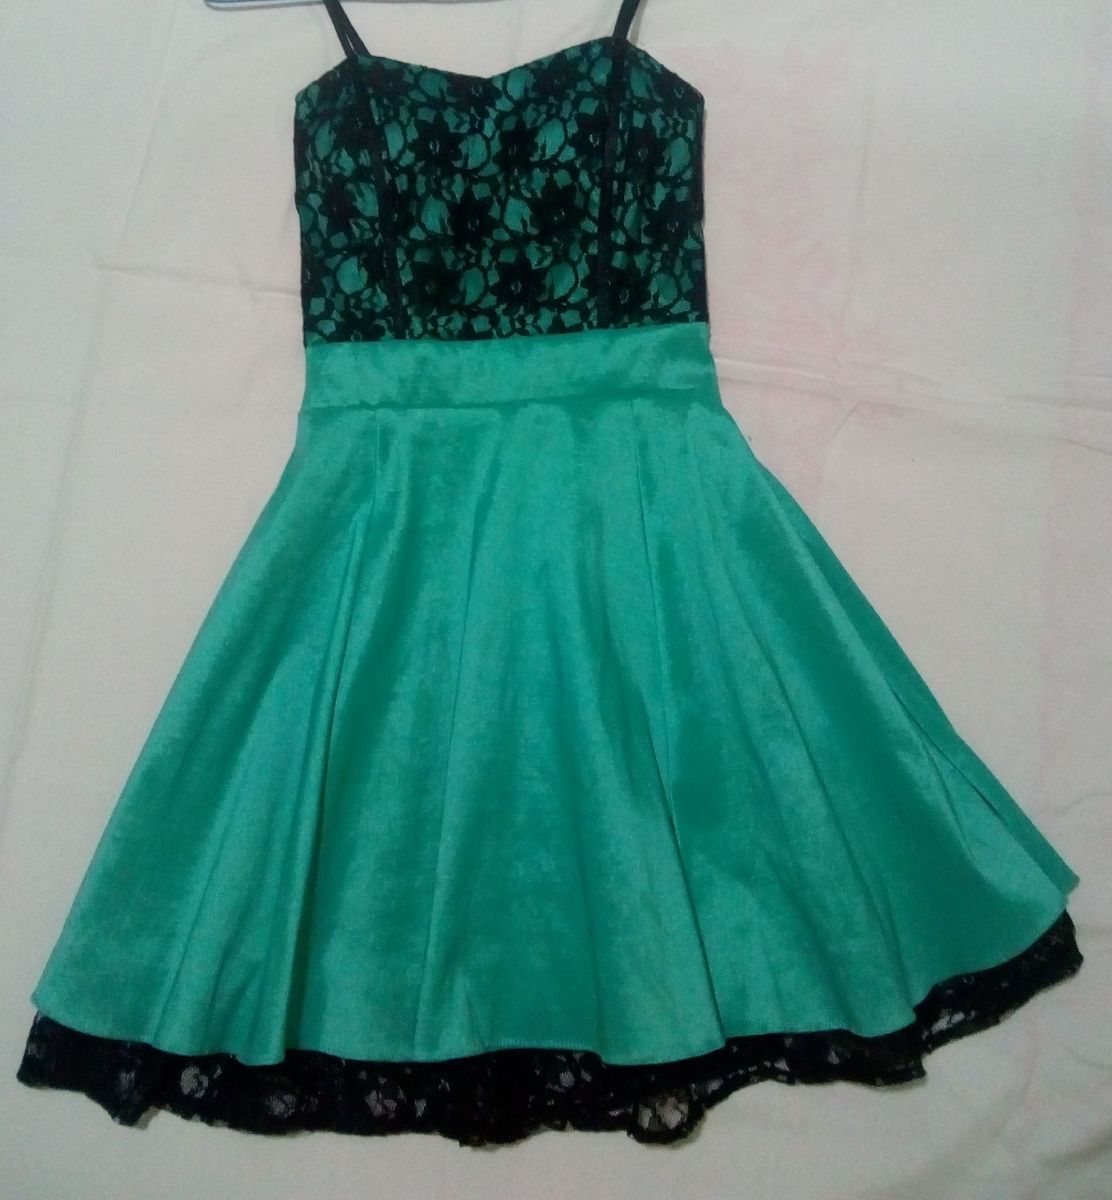 vestido de formatura verde curto